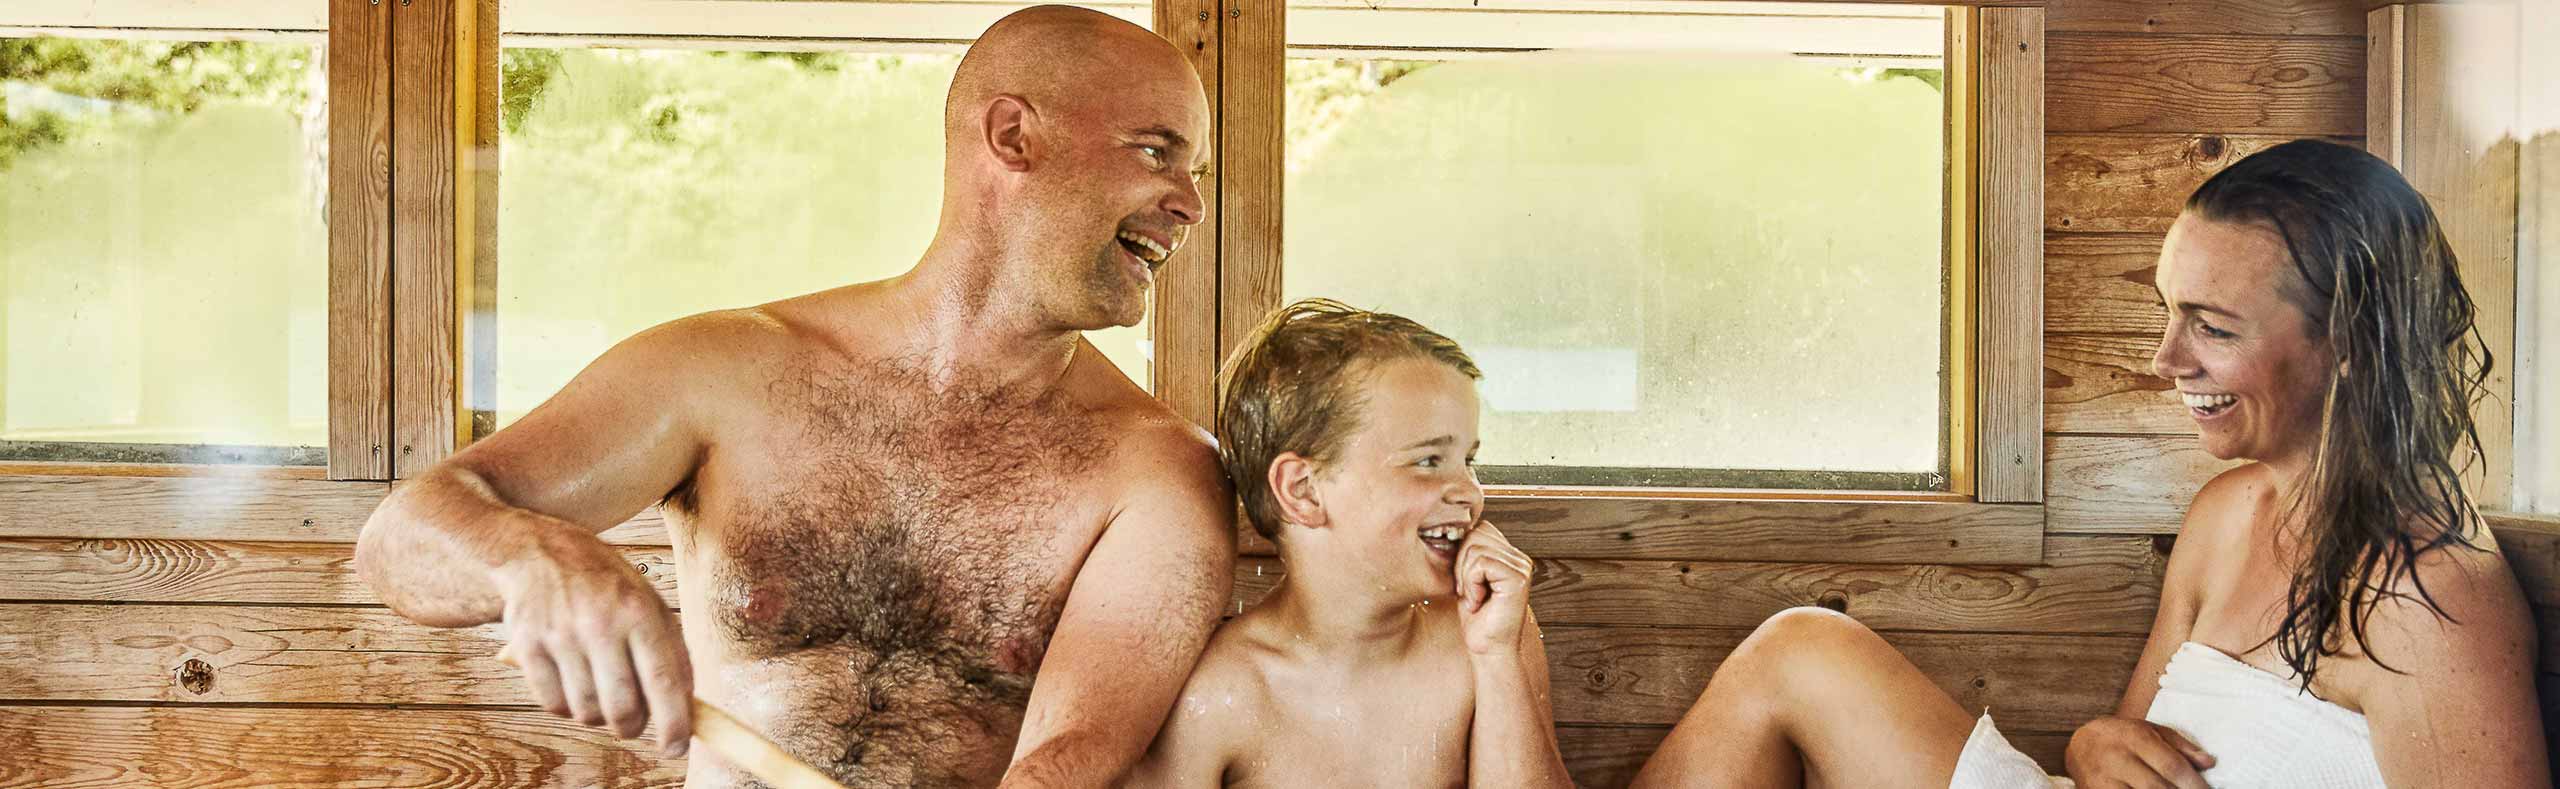 family in a sauna